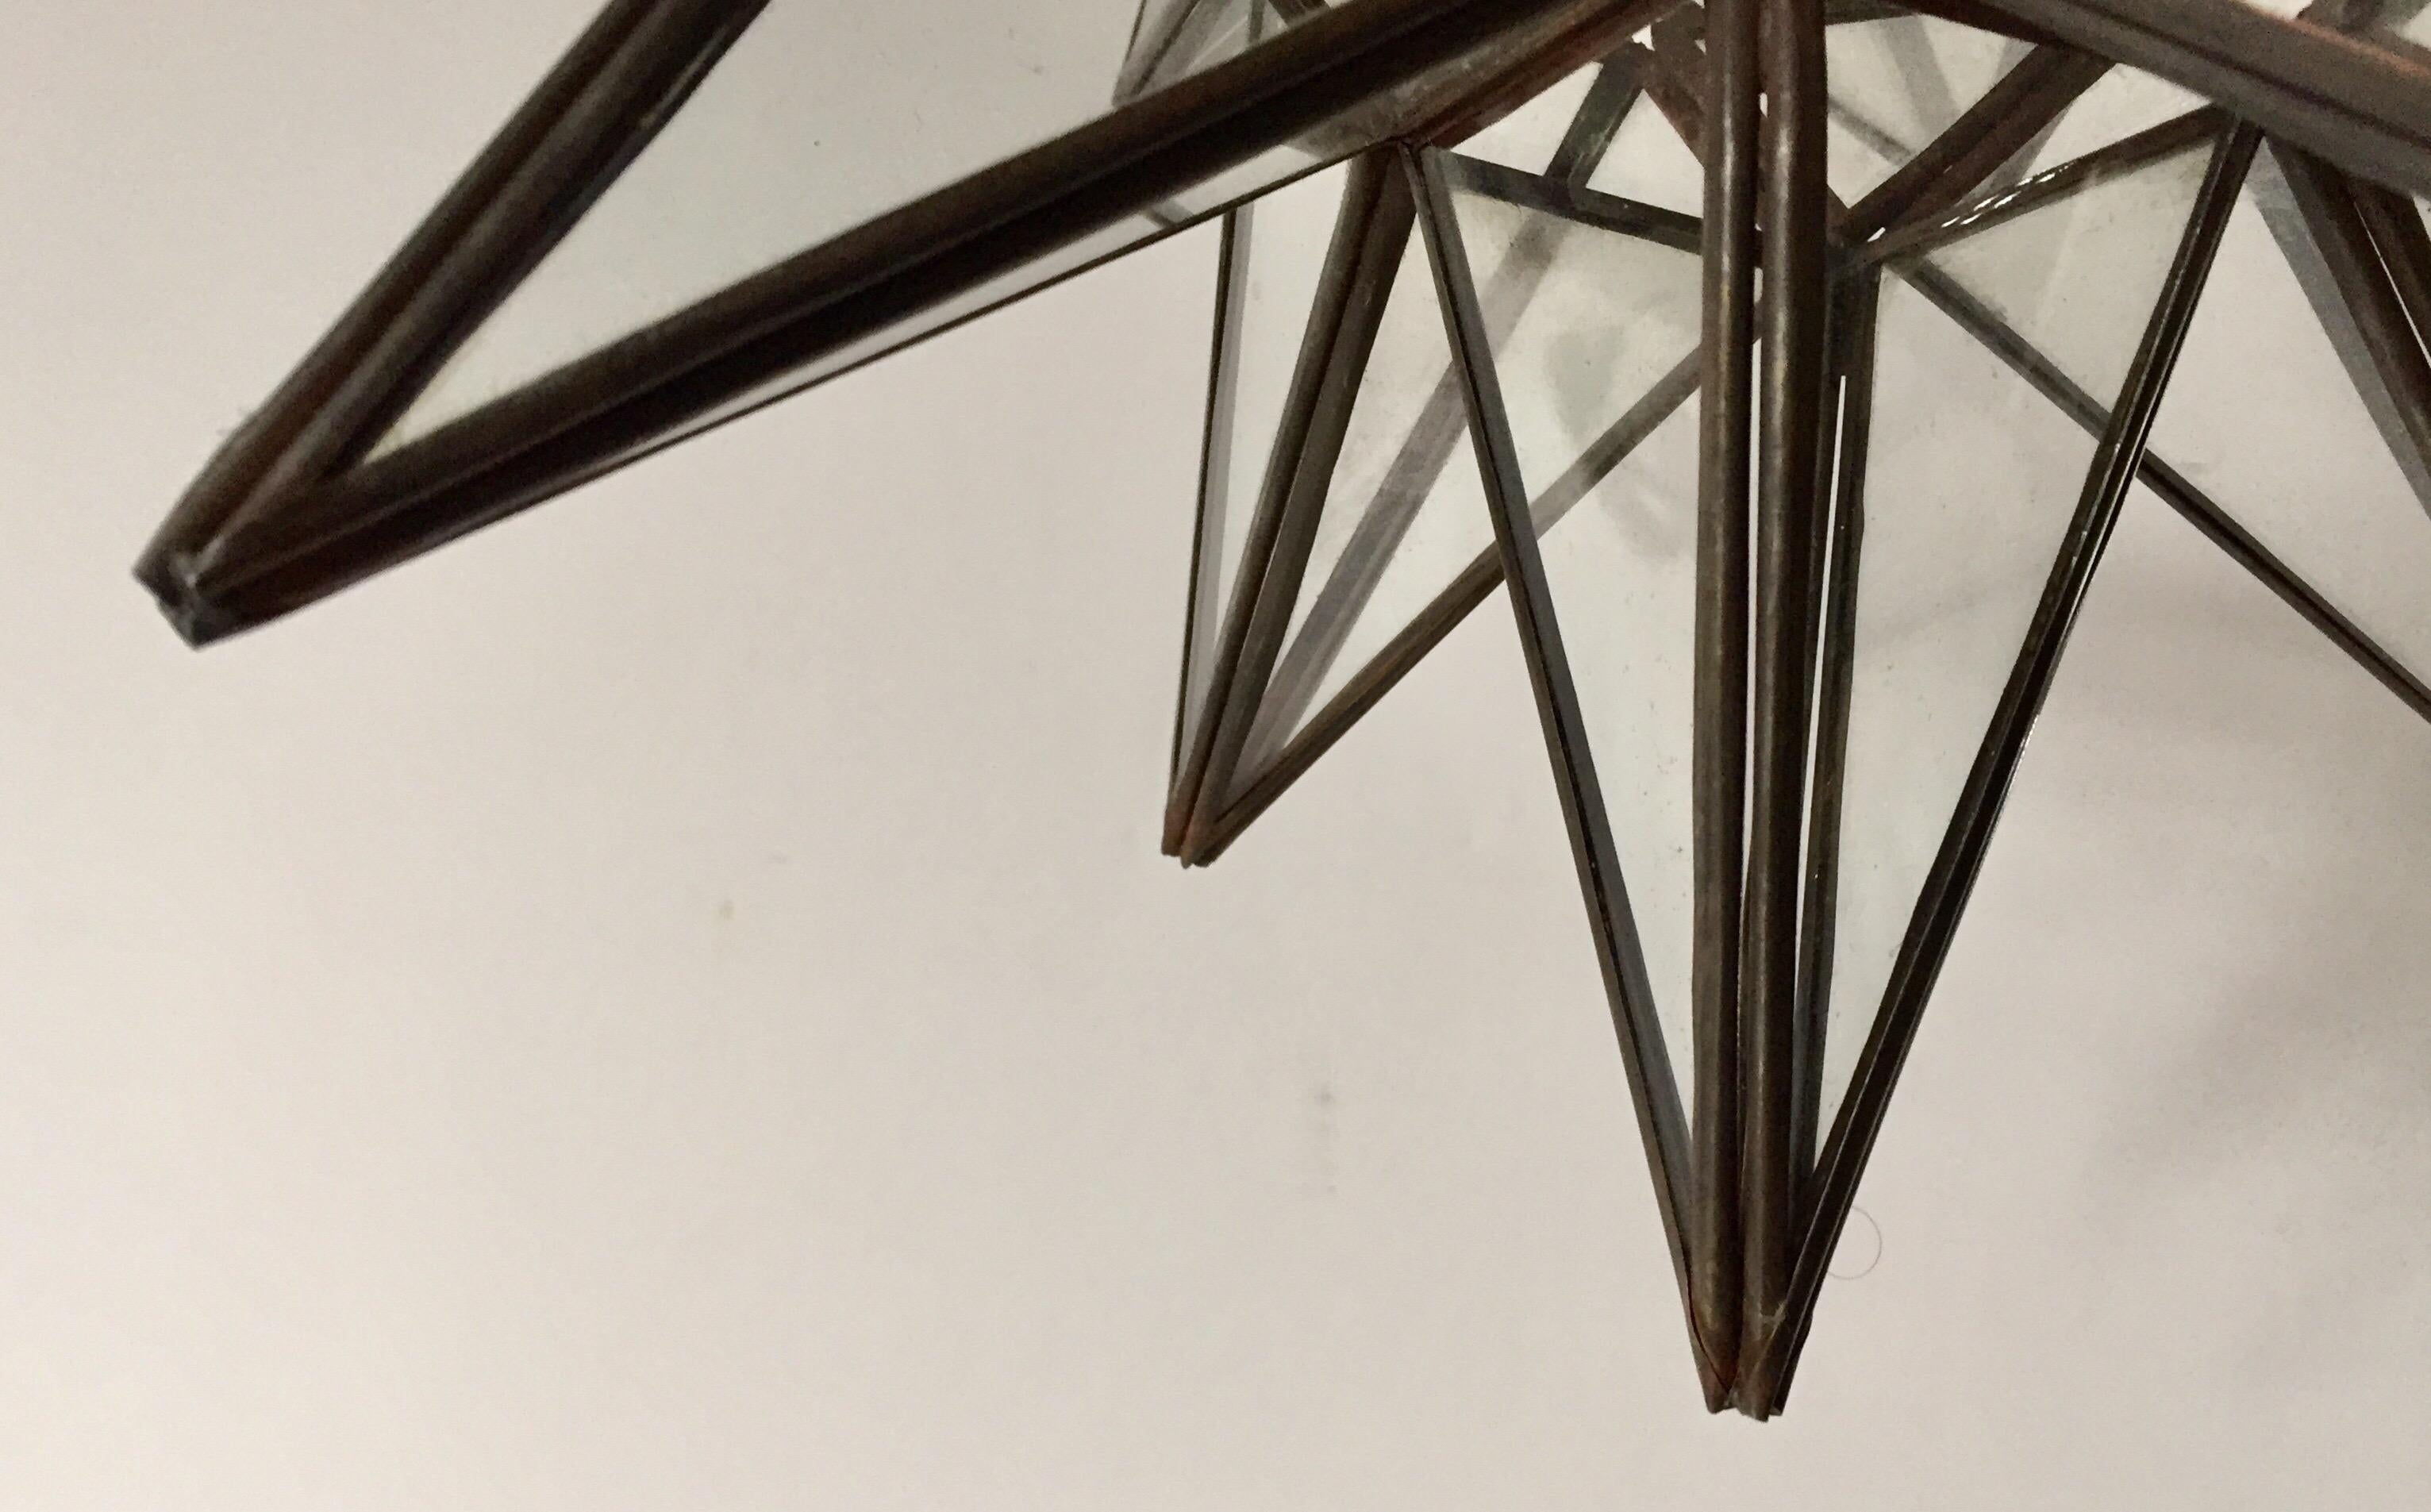 Lanterne marocaine en verre clair et métal encadré Moravian en forme d'étoile Un beau pendentif géométrique vintage en métal et verre en forme d'étoile. Grande lanterne étoilée aux multiples facettes, dont les panneaux de verre forment des formes